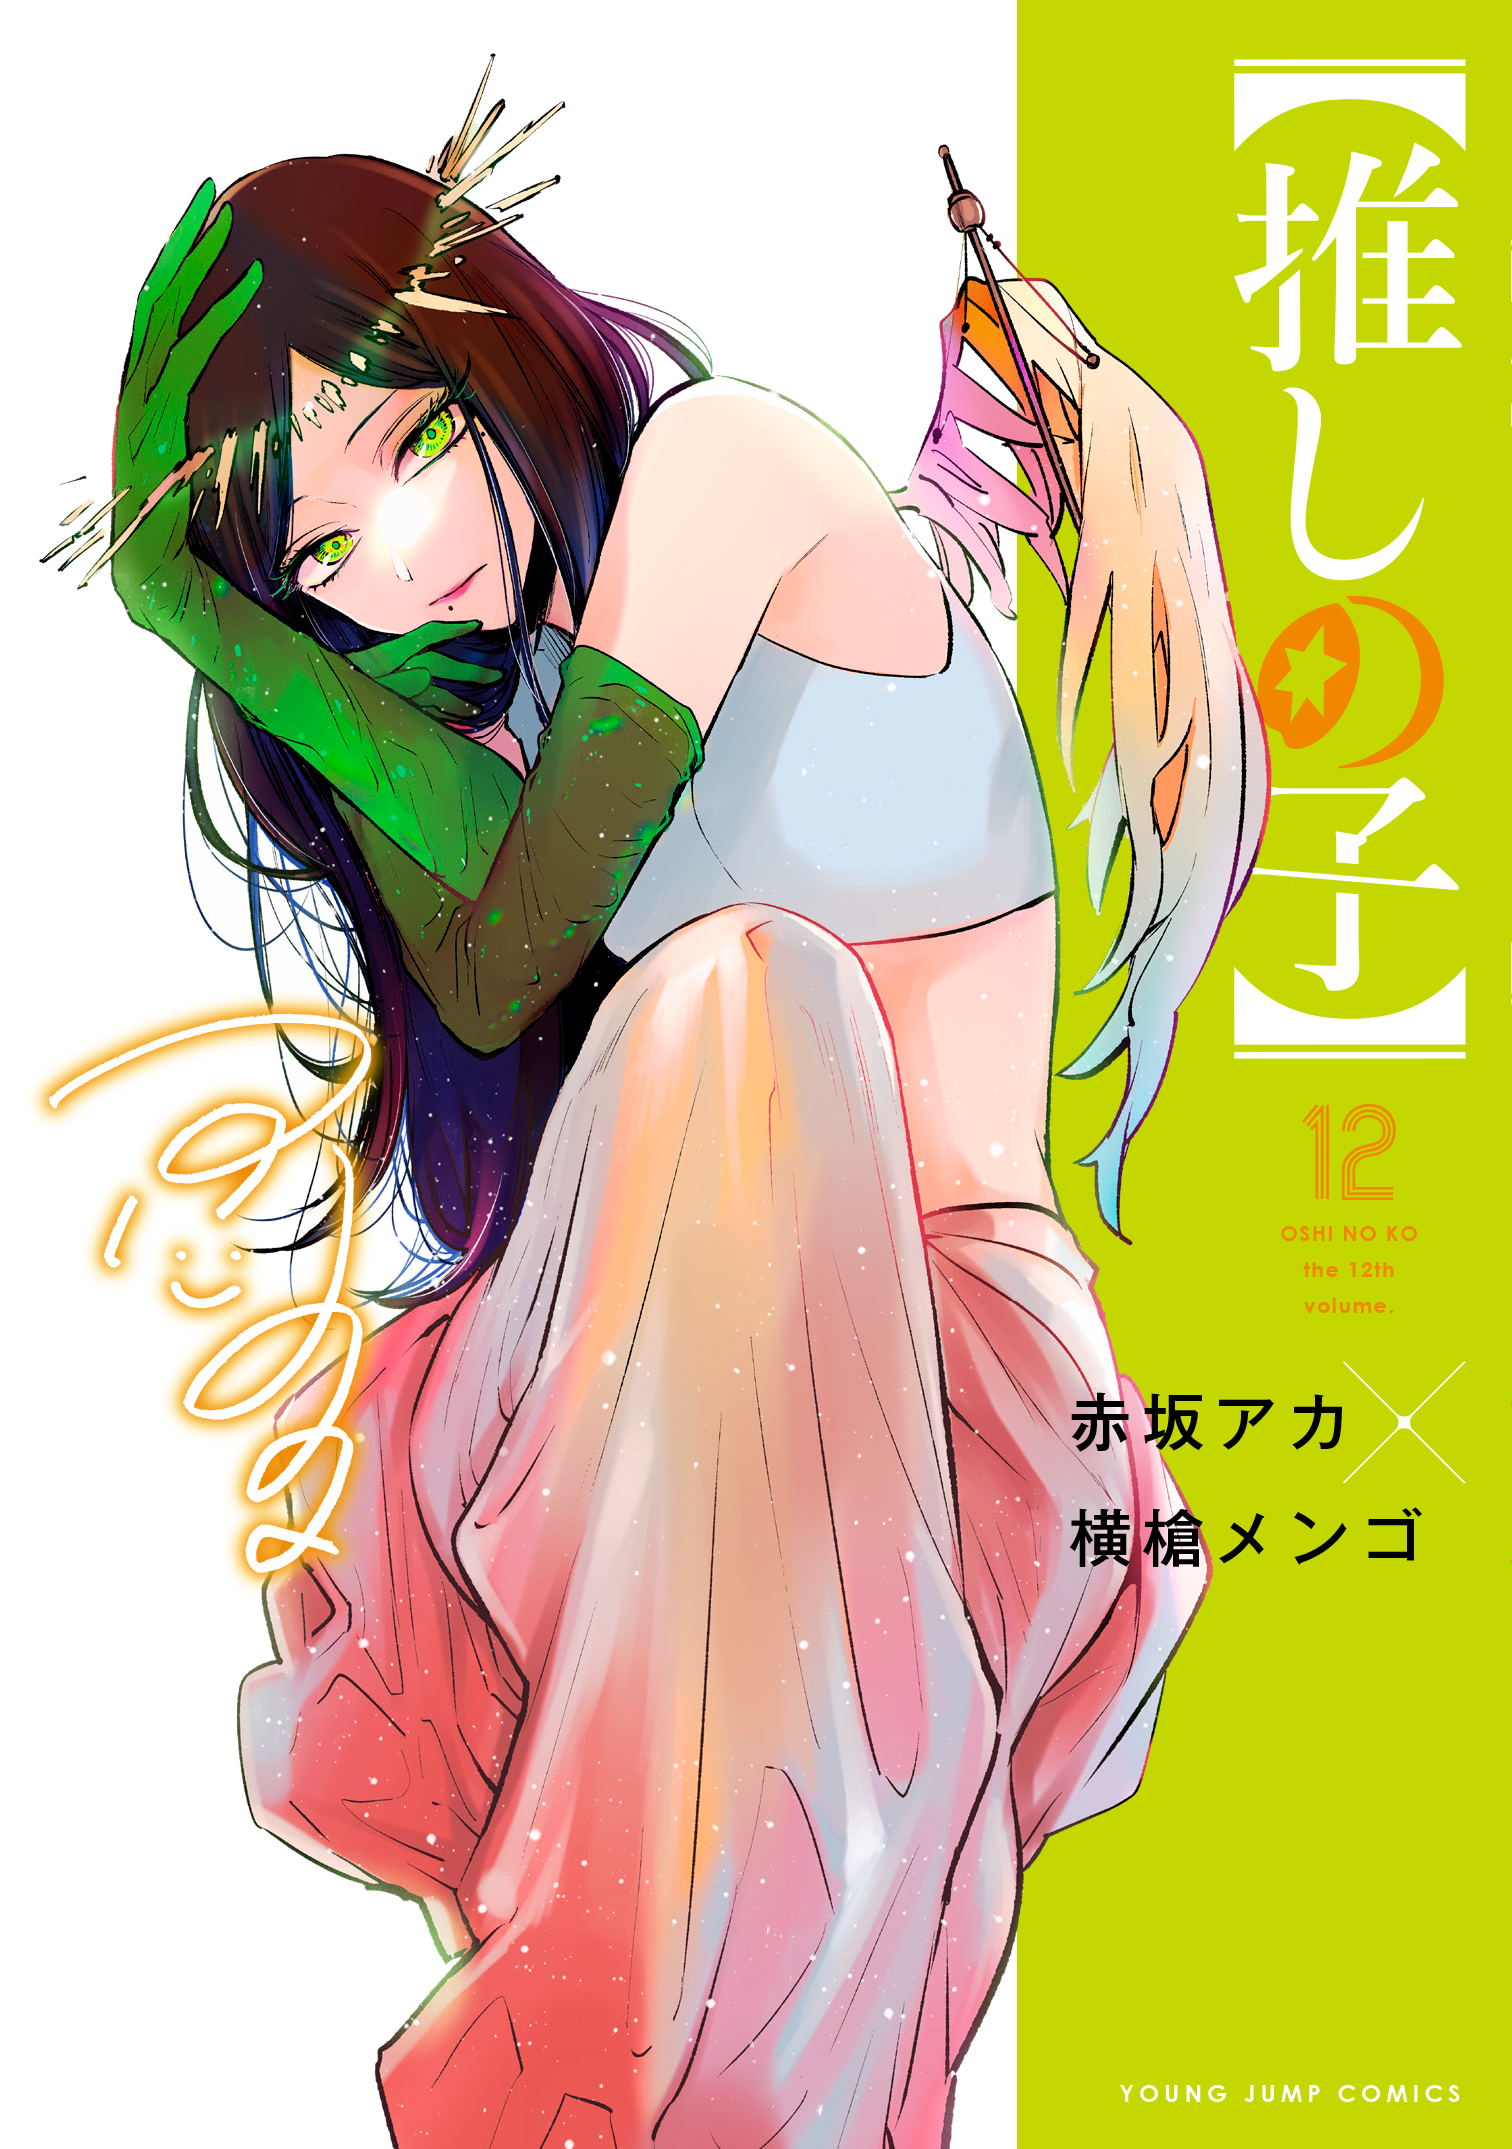 Oshi no ko, Chapter 115 - Oshi no ko Manga Online